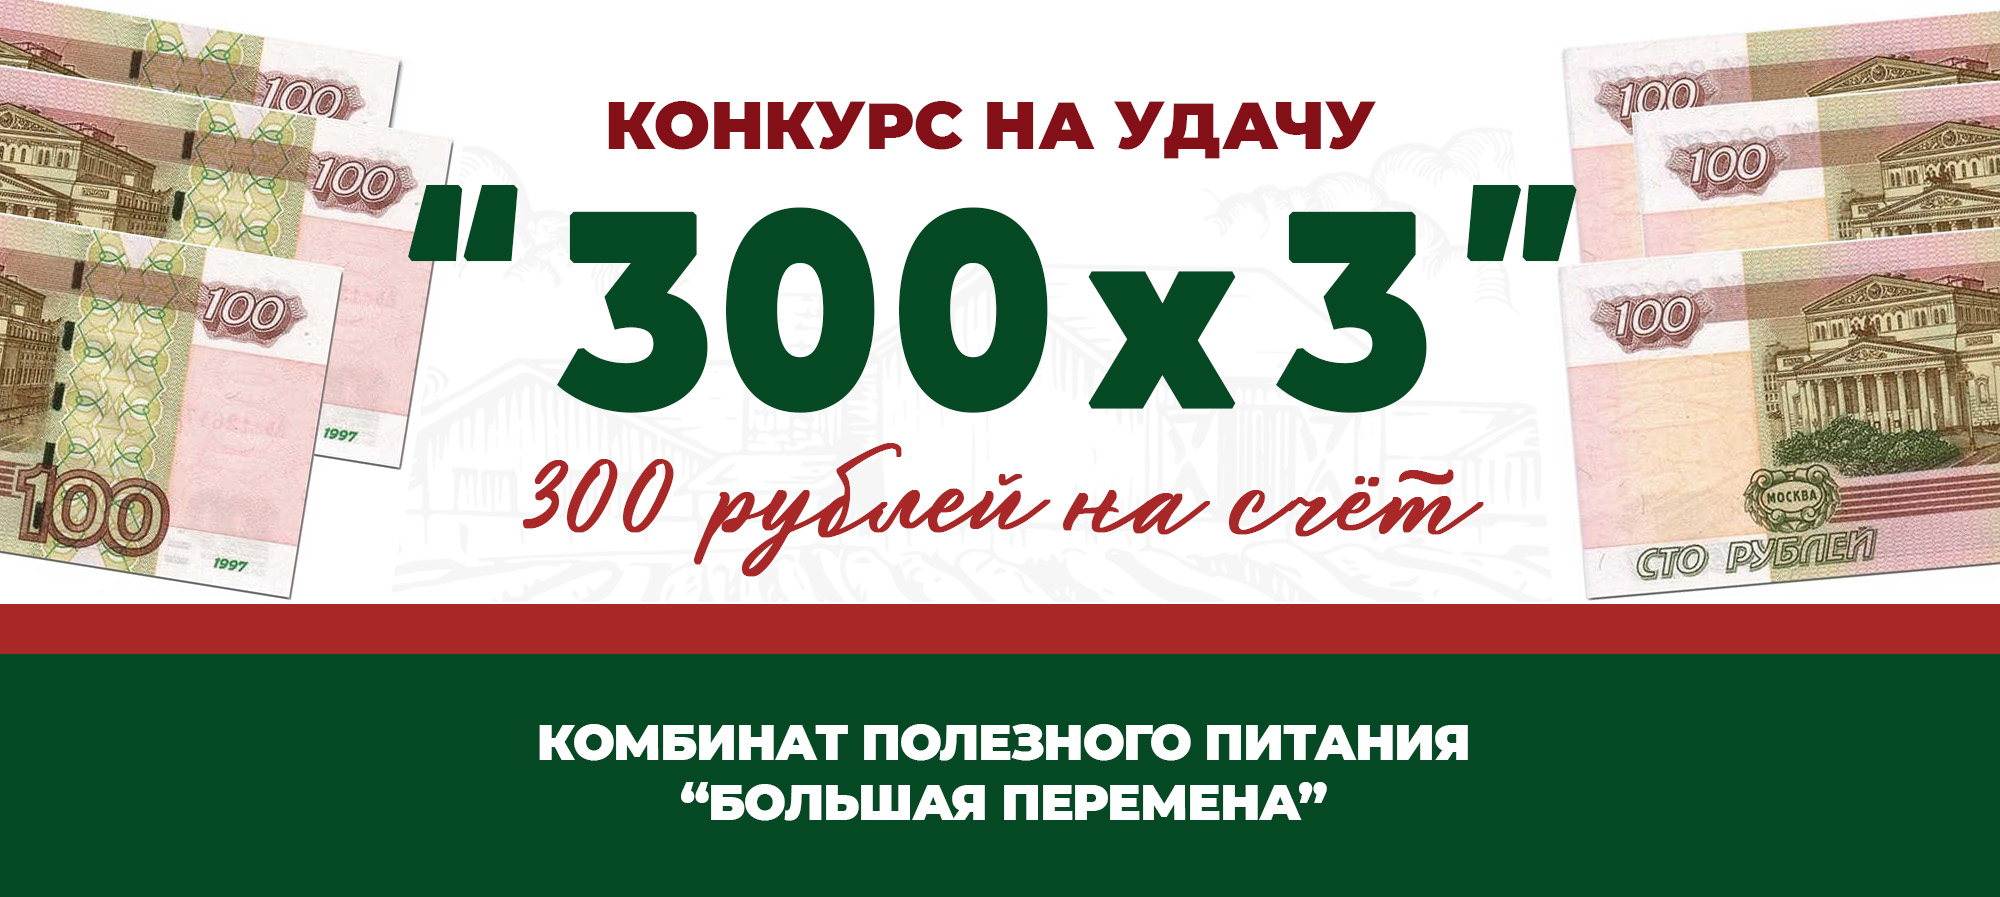 Большая перемена балаково личный кабинет комбинат питания. 300 Рублей конкурс. Карта питания большая перемена.